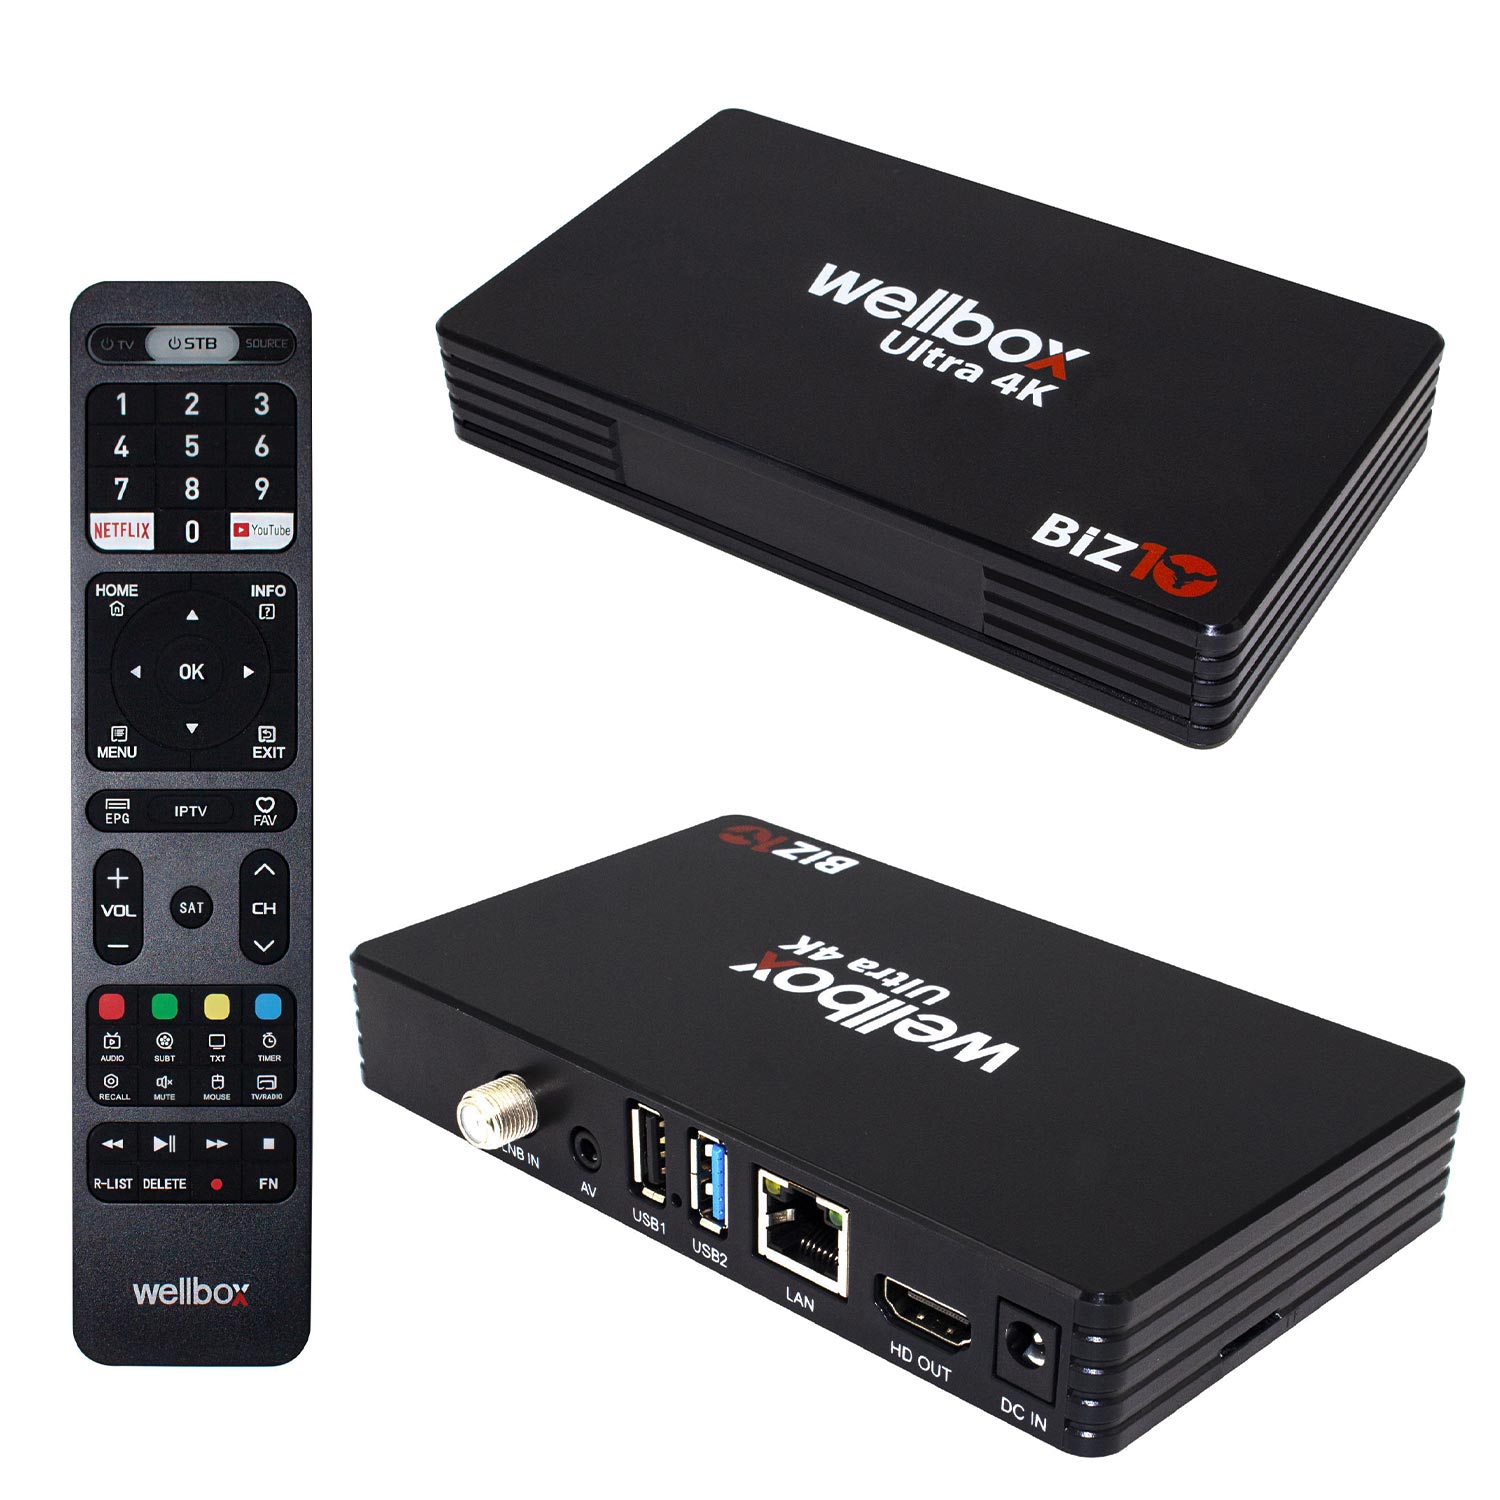 ANDROİD TV BOX UYDU ALICISI 2GB RAM 16GB ROM WELLBOX BİZ-10